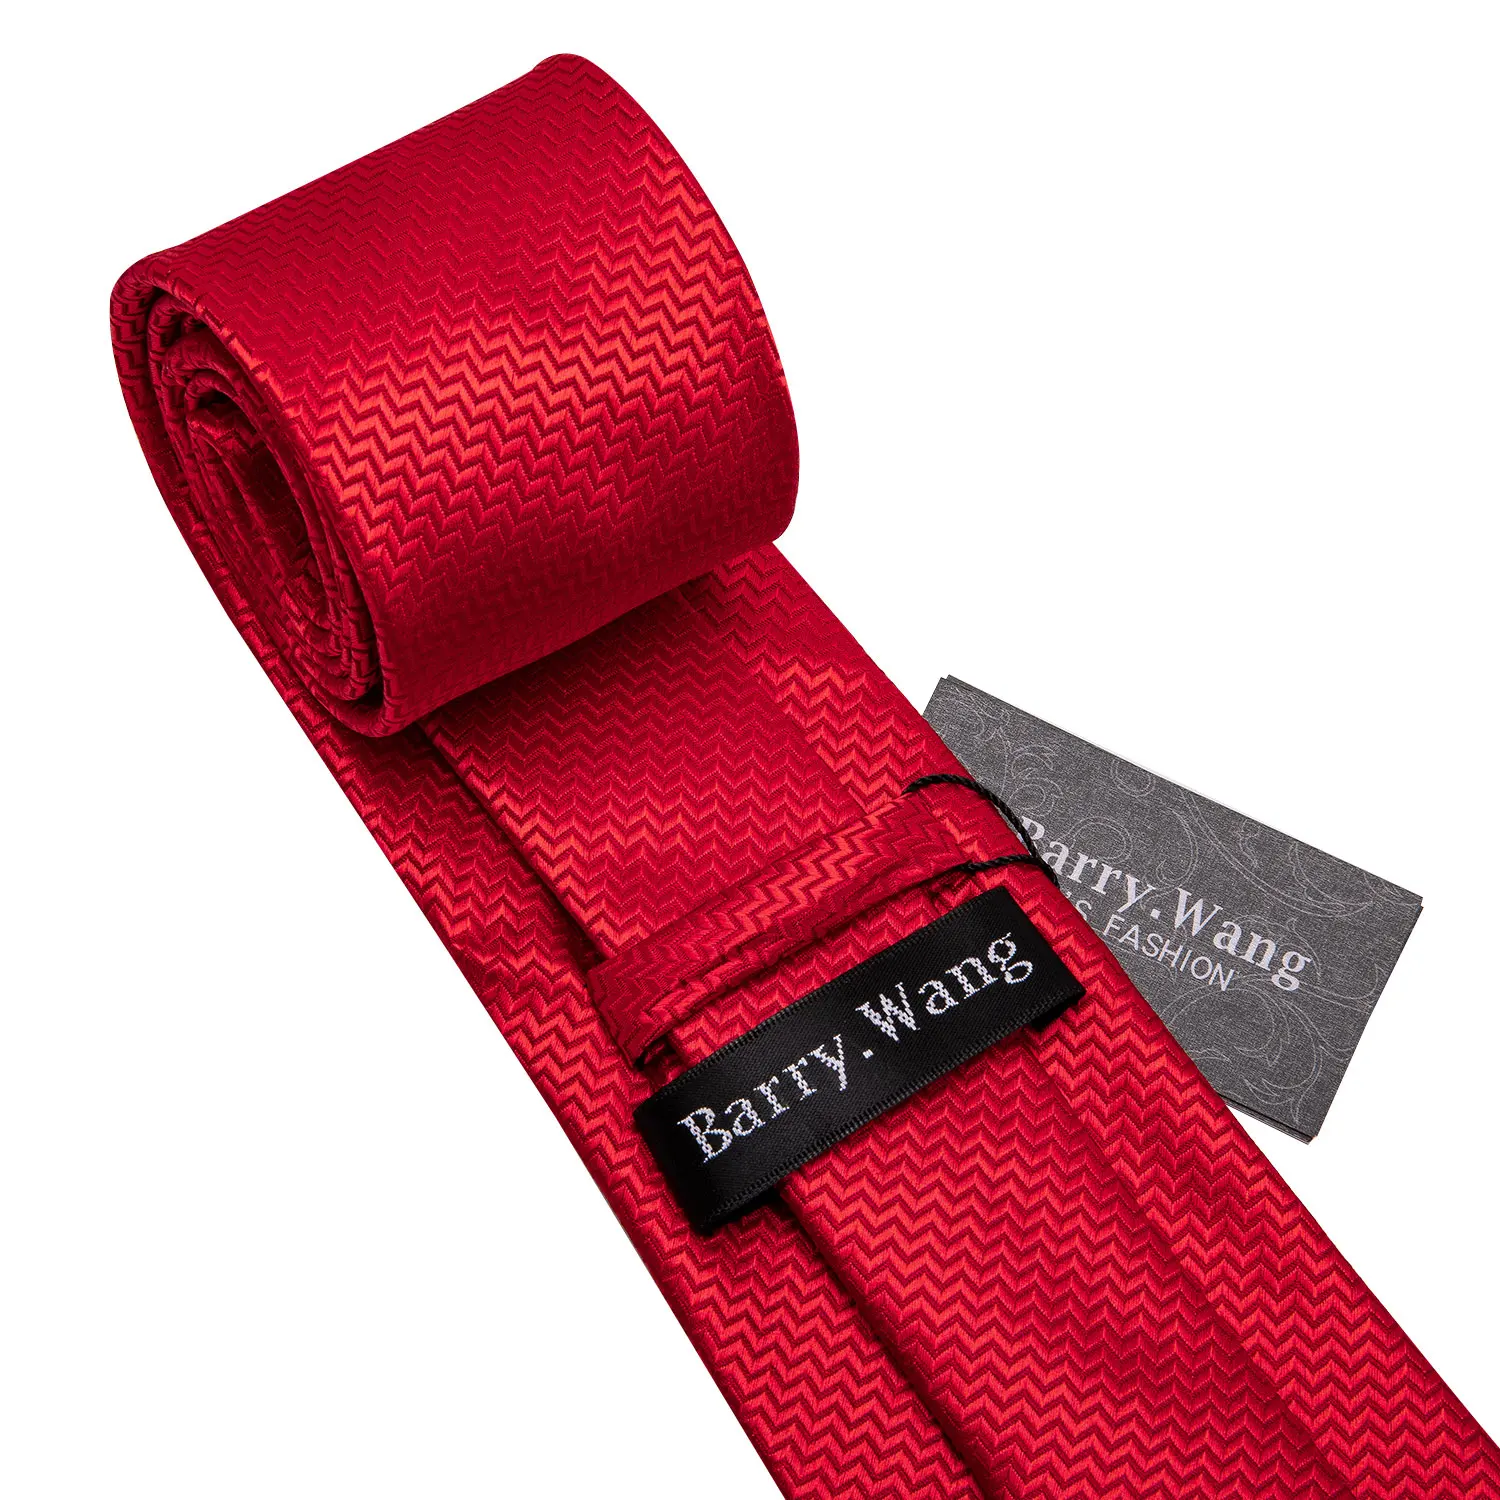 Мужской галстук набор красный цветочный Шелковый галстук для мужчин галстук для свадебной вечеринки платок широкий галстук набор Барри. Ван модный галстук LS-5198